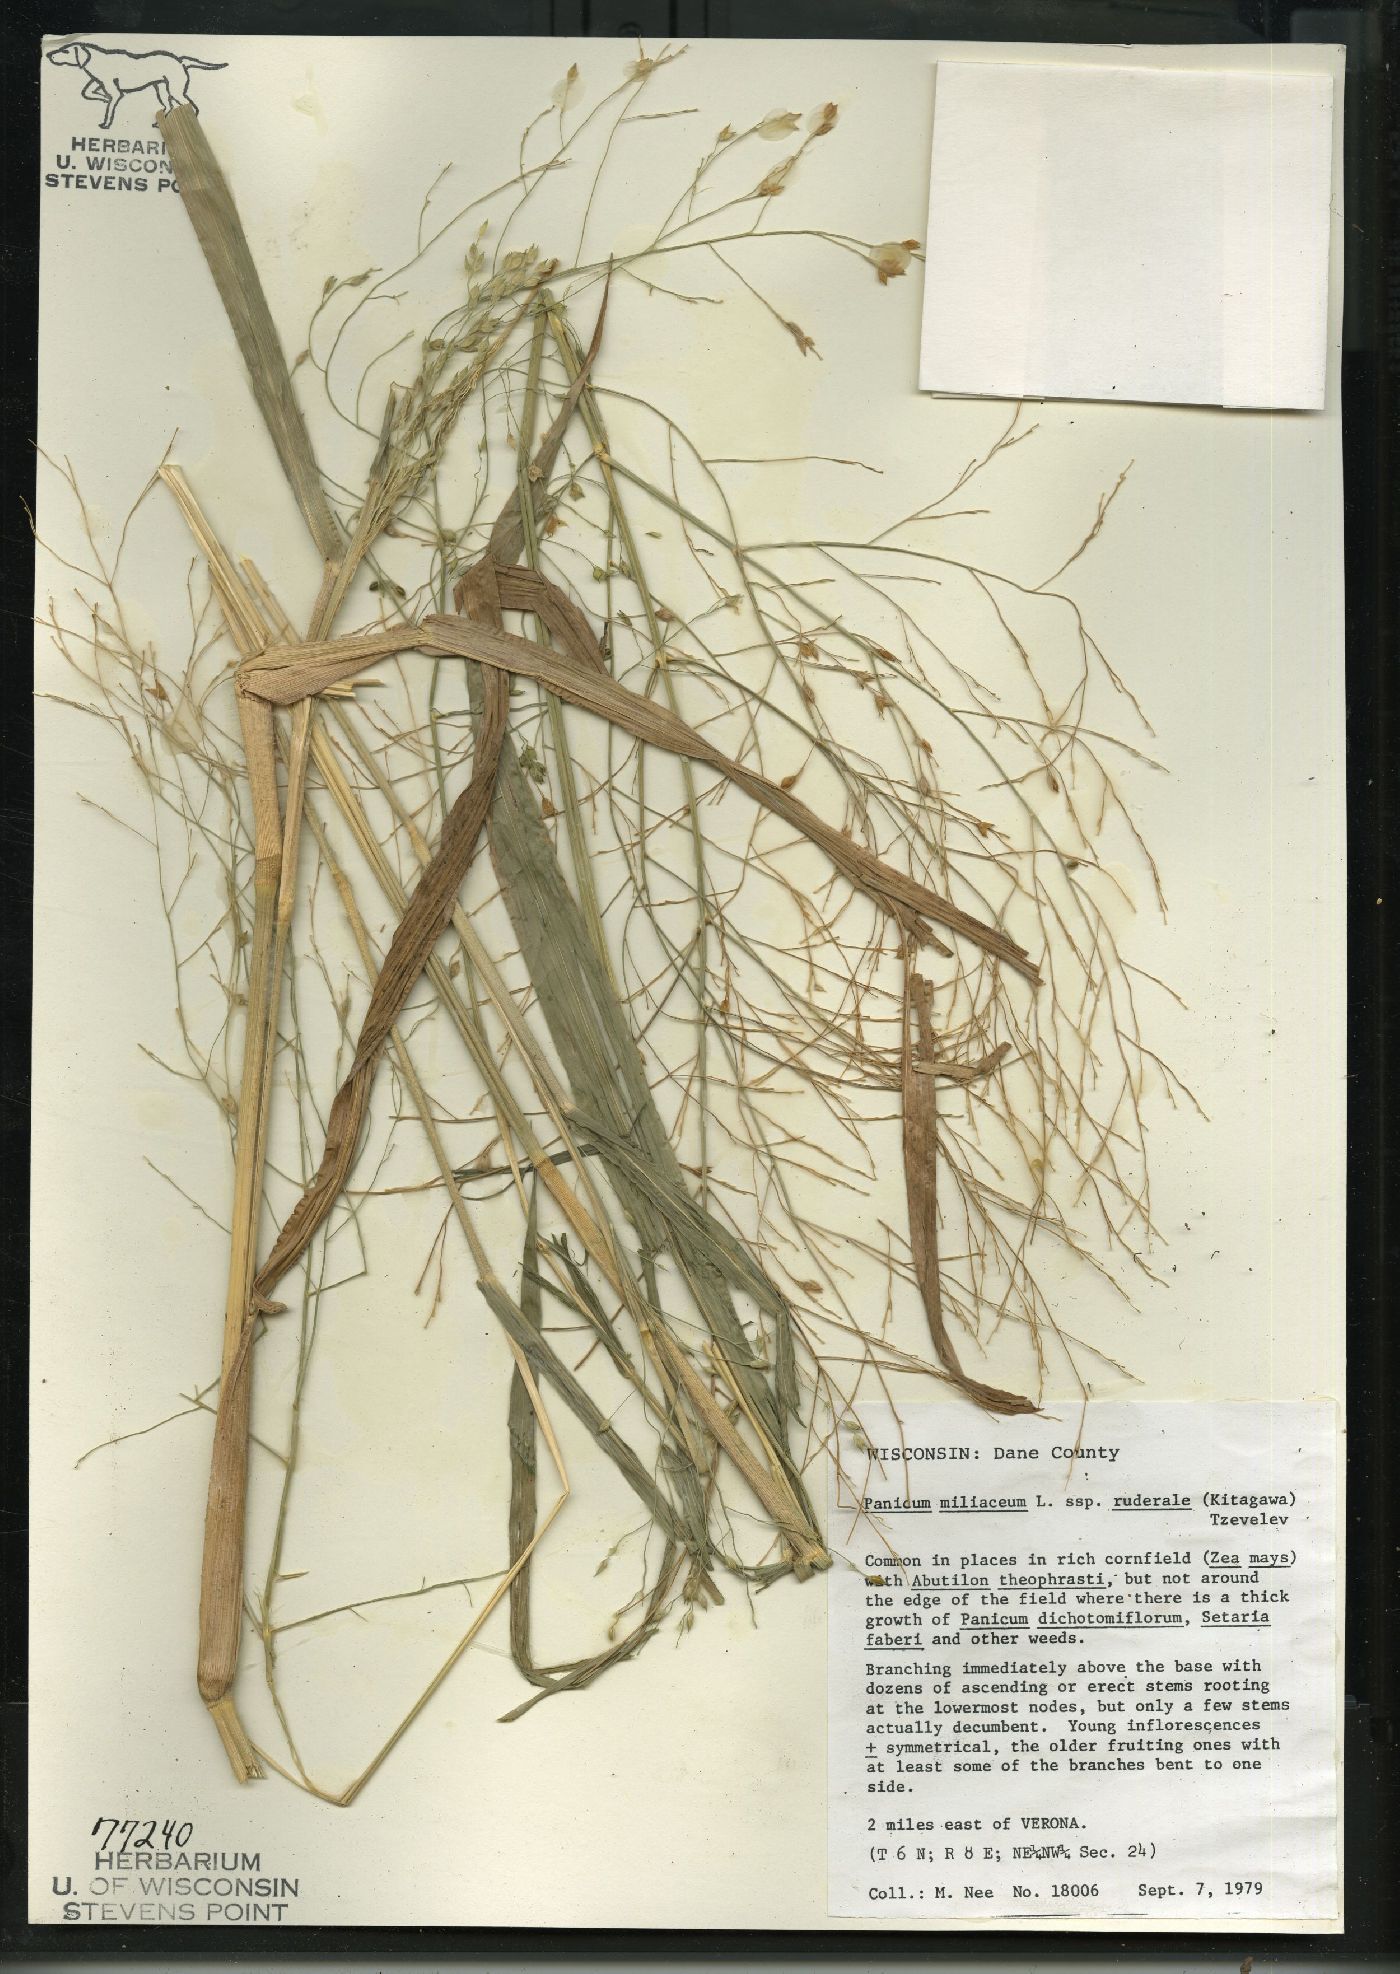 Panicum miliaceum subsp. ruderale image